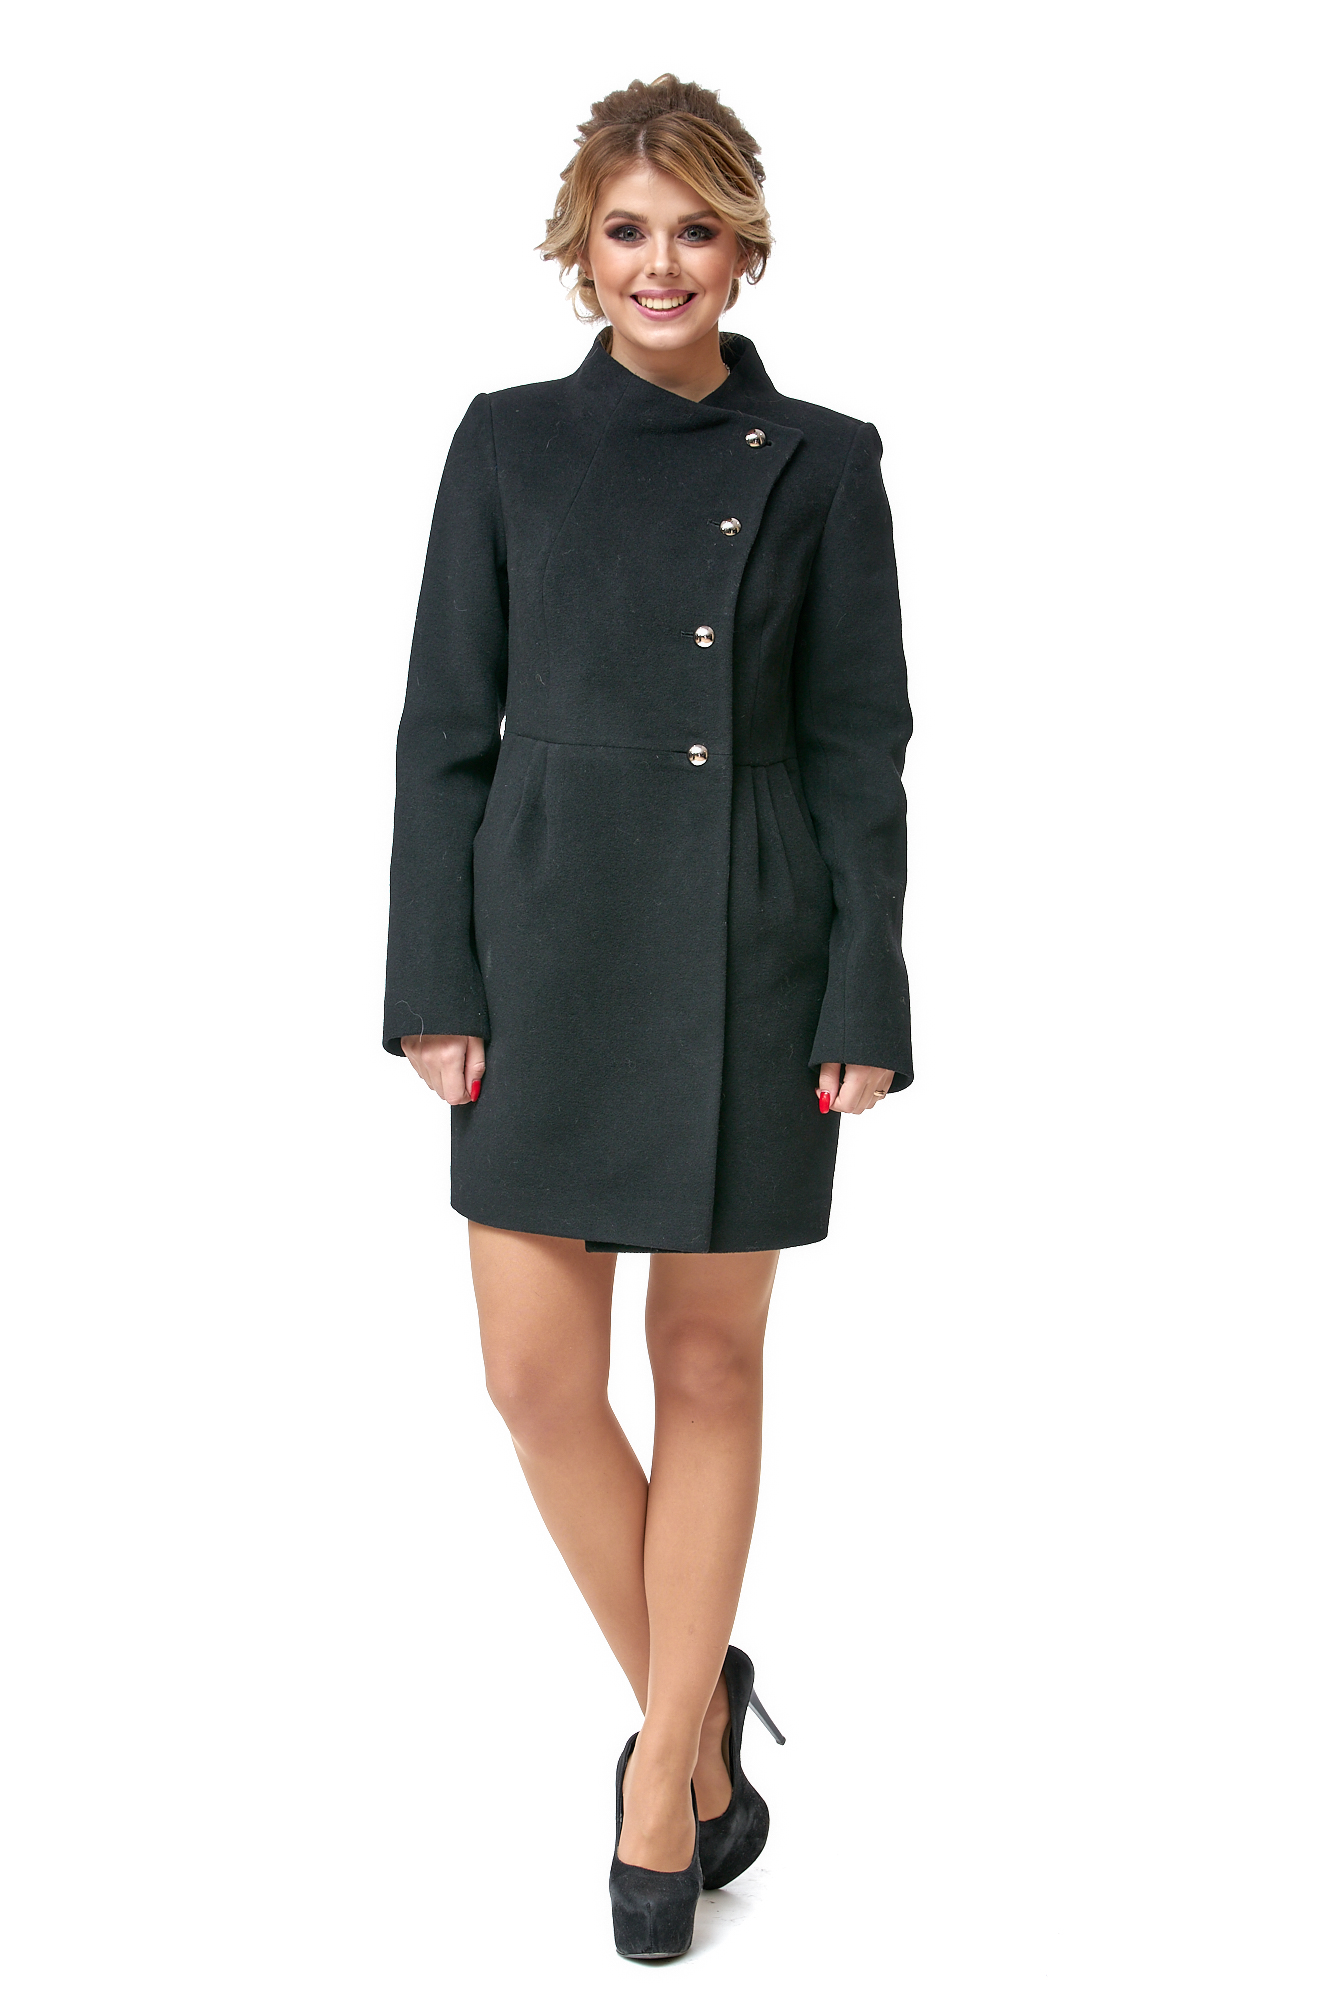 Женское пальто из текстиля с воротником 8002529-2